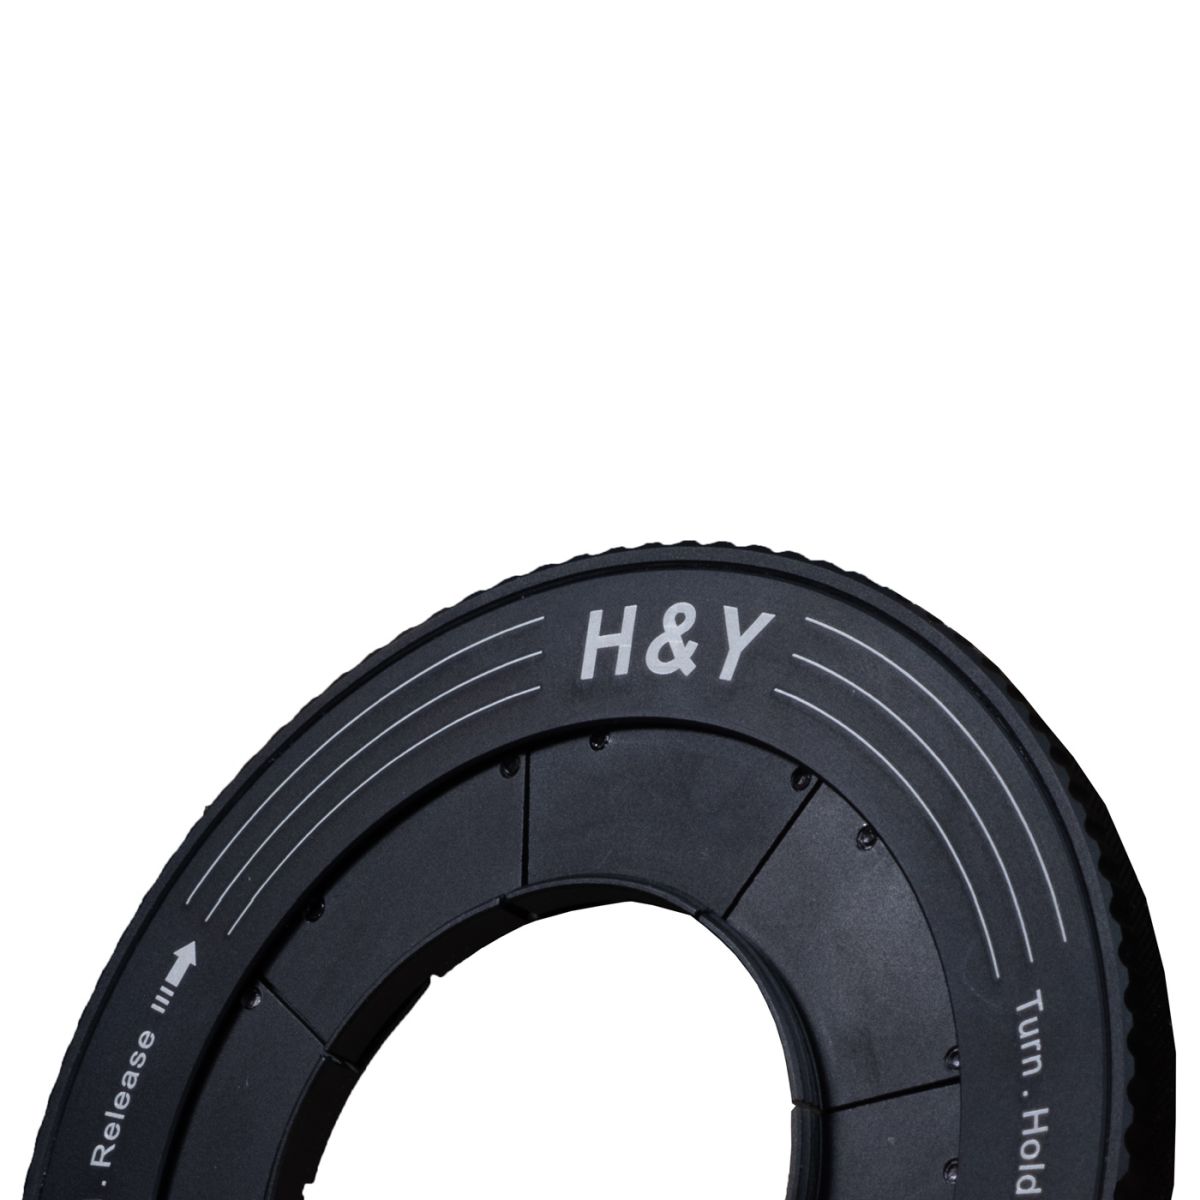 H&Y REVORING 37-49 mm Filteradapter für 52 mm Filter